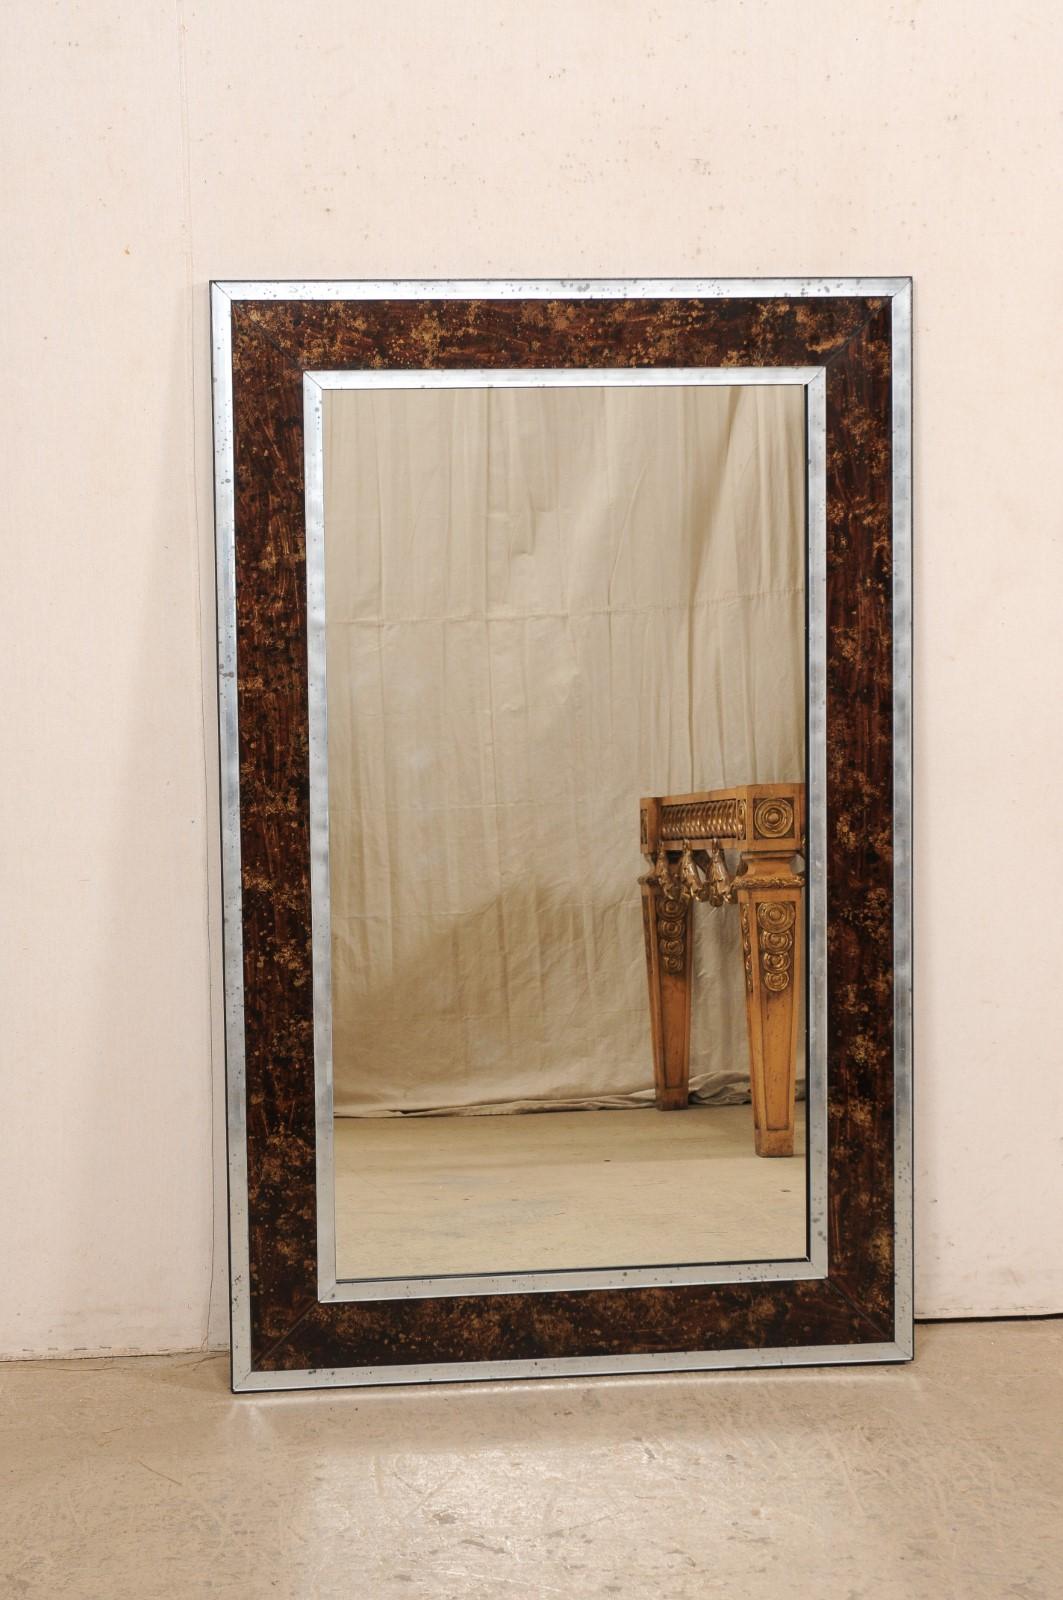 Magnifique miroir mural rectangulaire de fabrication artisanale, en verre églomisé et antiquité. Ce miroir rectangulaire de belle taille a été fabriqué artisanalement avec un entourage en faux églomisé de tortue, de couleur brune, encadré par des